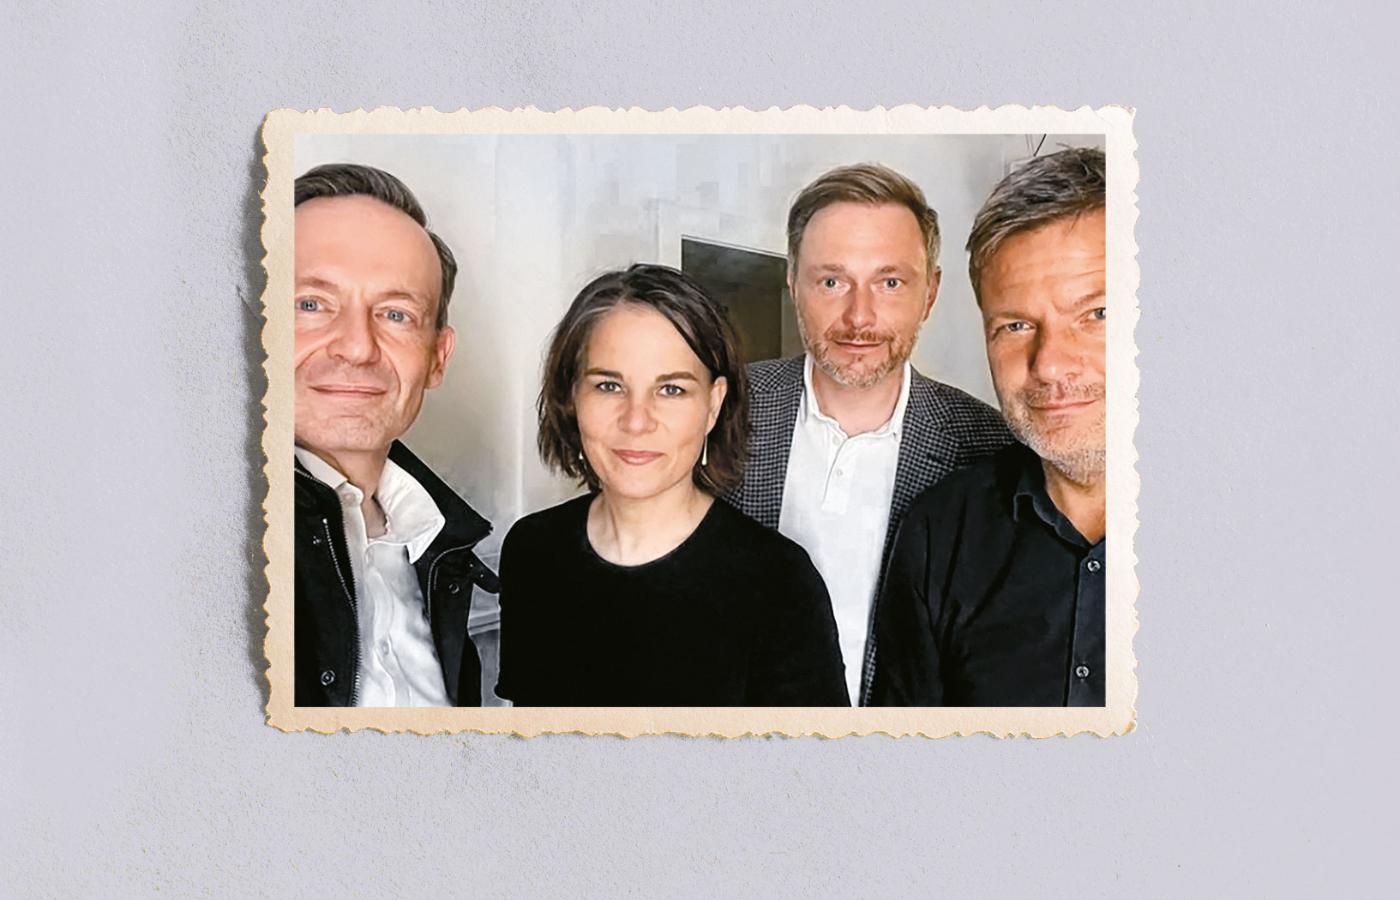 Od lewej: Volker Wissing (Zieloni), Annalena Baerbock (Zieloni), Christian Lindner (FDP) i Robert Habeck (Zieloni) – kogo wybiorą na kanclerza?